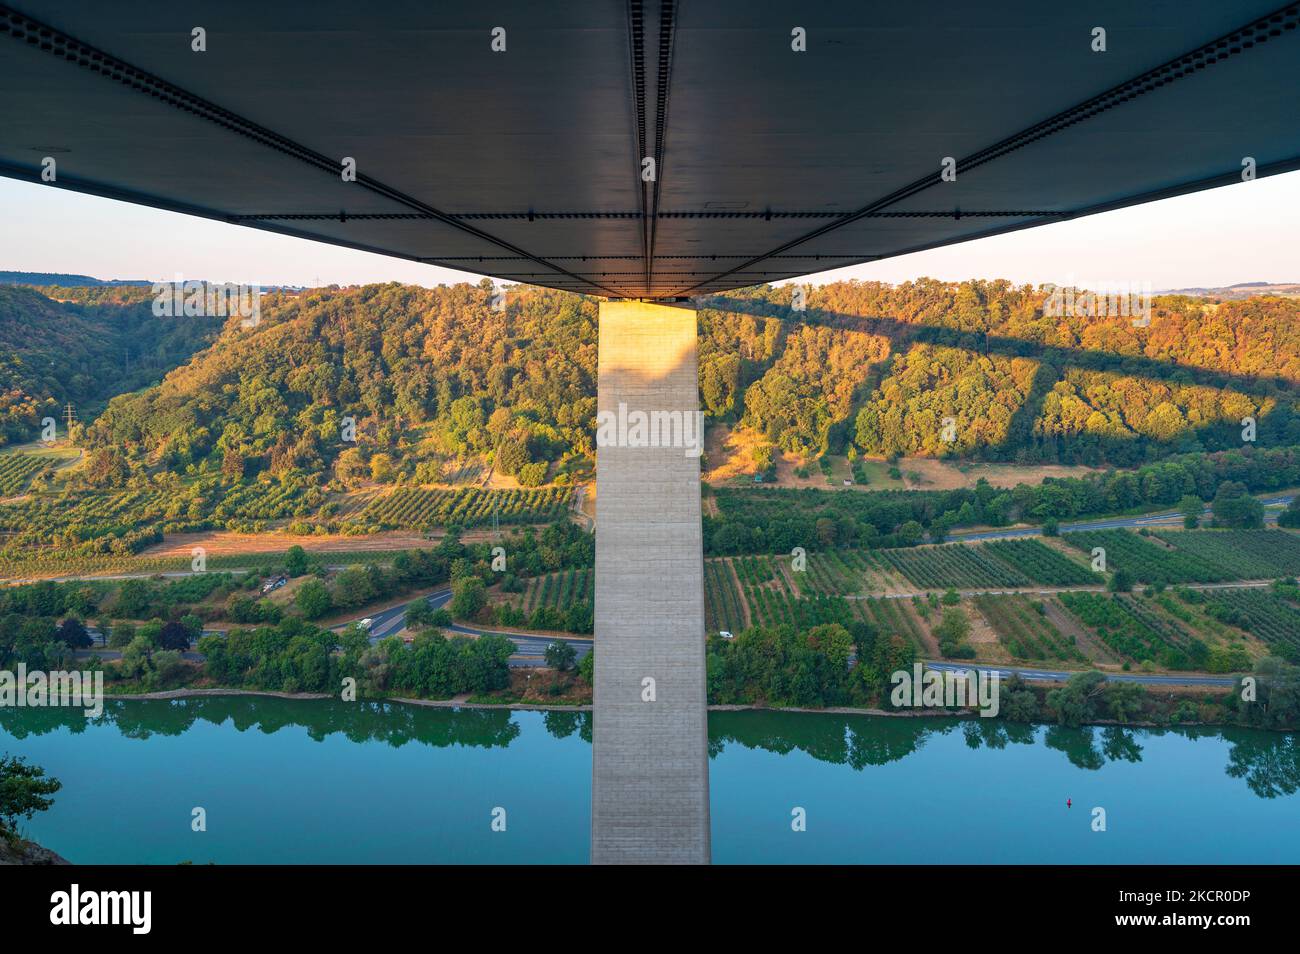 Sous le pont de Moseltal de A61 au lever du soleil avec vue sur la rivière Mosel et les vignobles de la vallée près de Koblenz en Rhénanie-Palatinat Banque D'Images